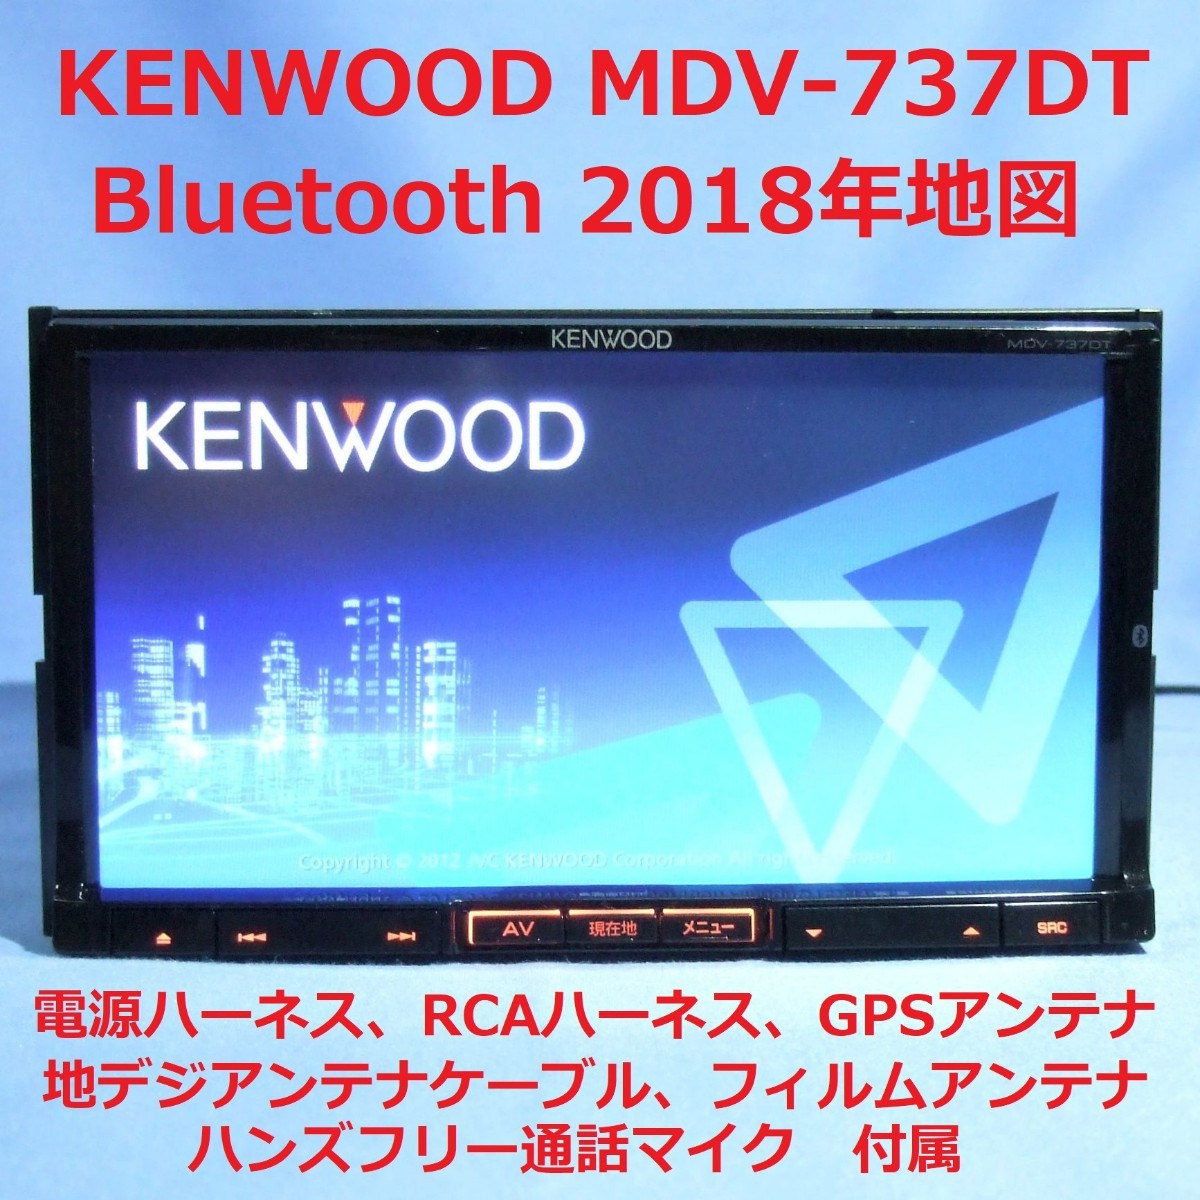 数量限定・即納特価!! ケンウッド(KENWOOD)彩速ナビ Bluetooth MDV-333